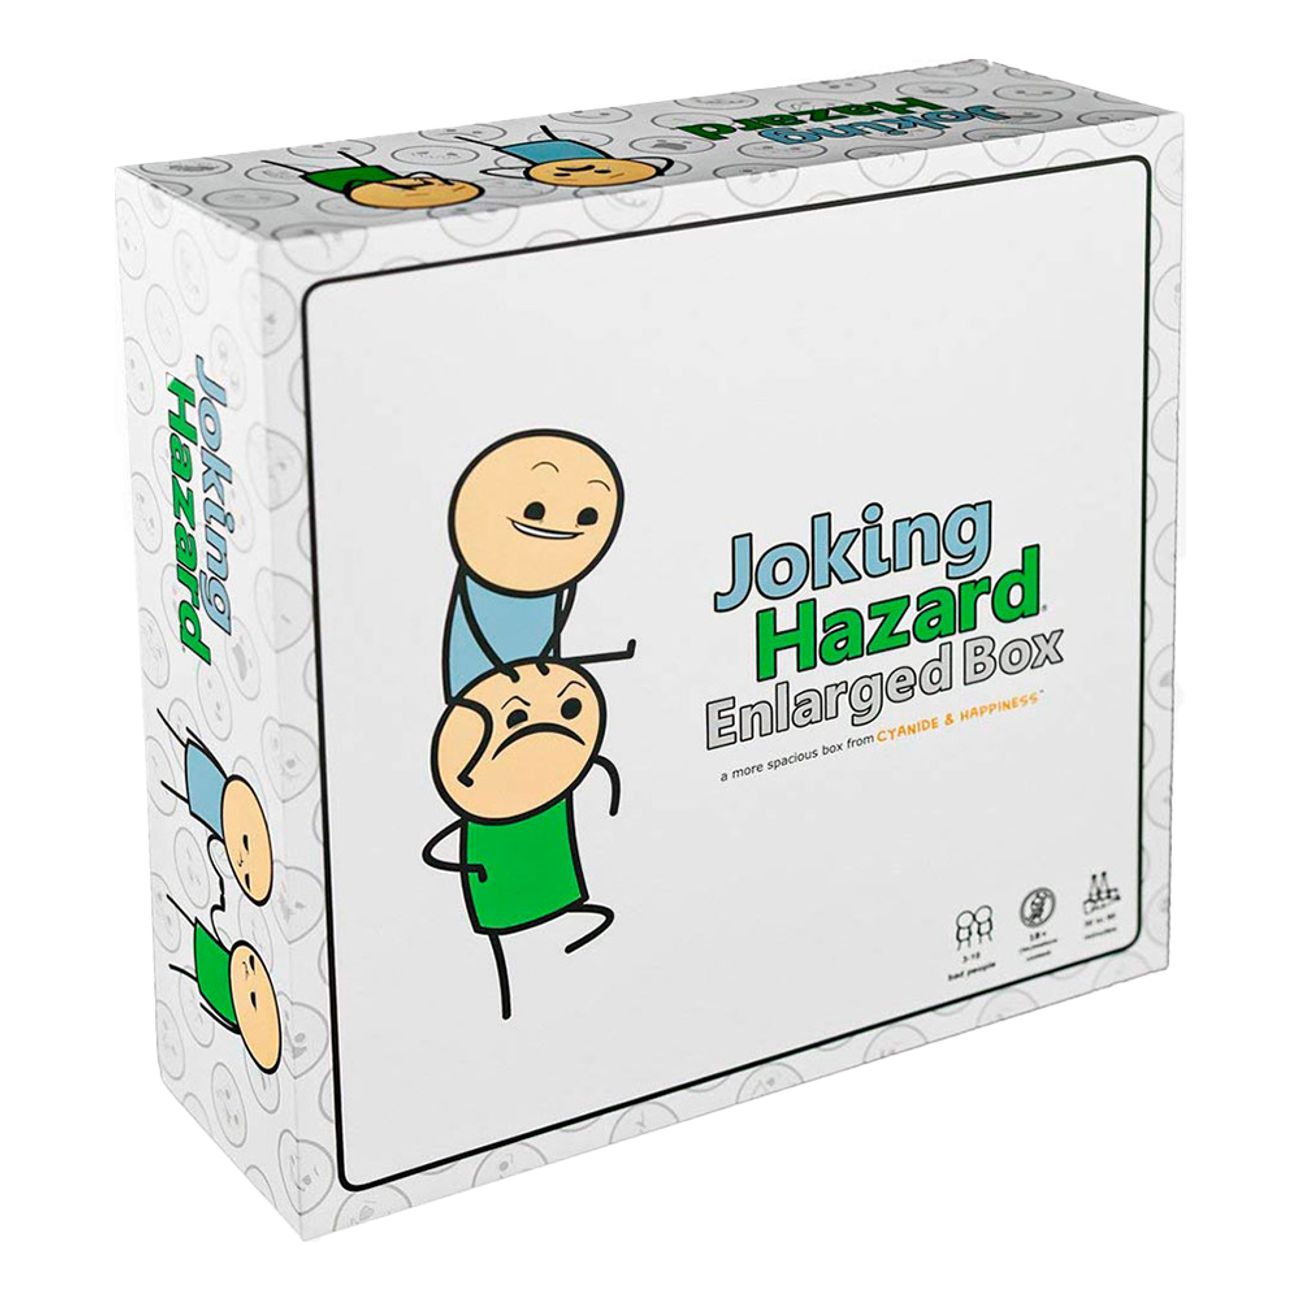 joking-hazard-enlarged-box-en-94812-1